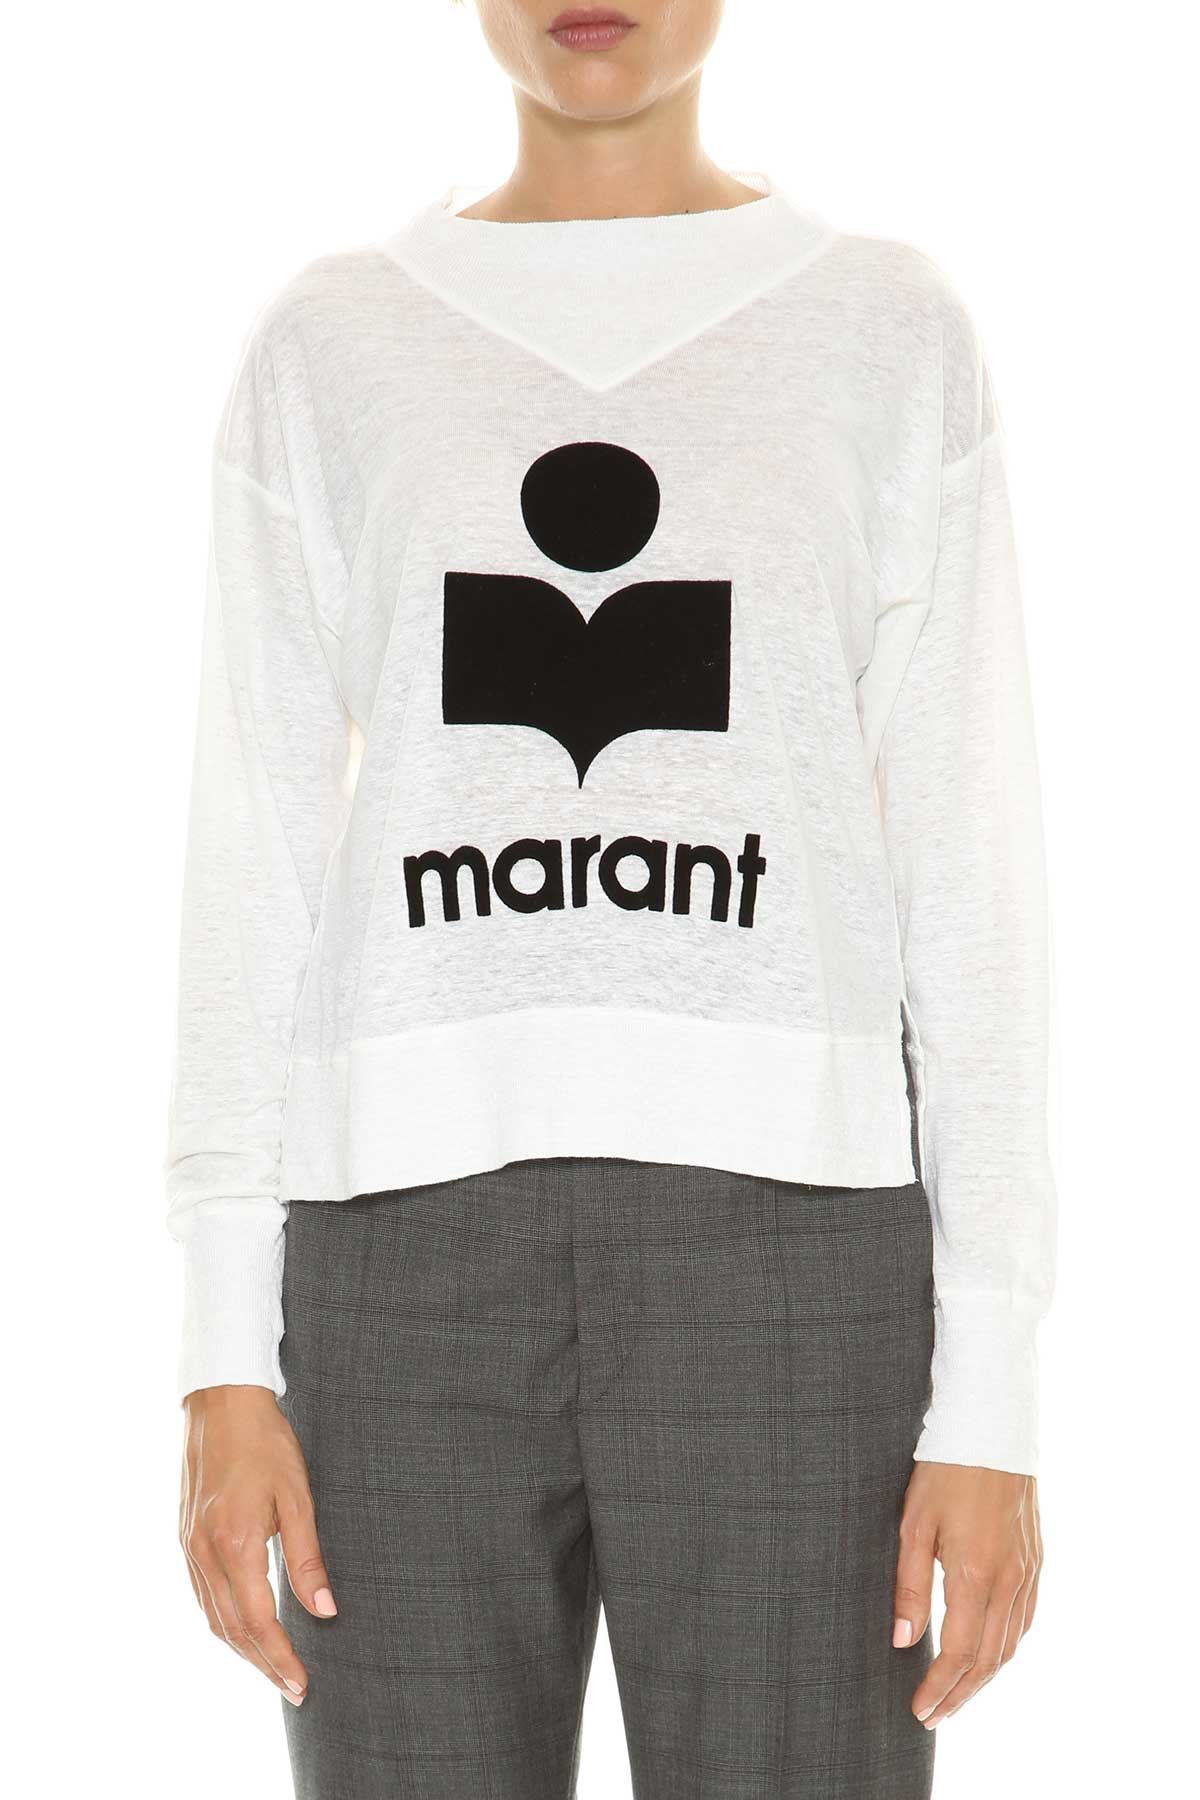 Isabel Marant Etoile T-shirt Marant Kilsen Manica Lunga Con Polsini E Scollo Rotondo Con Velluto | Italist.com US